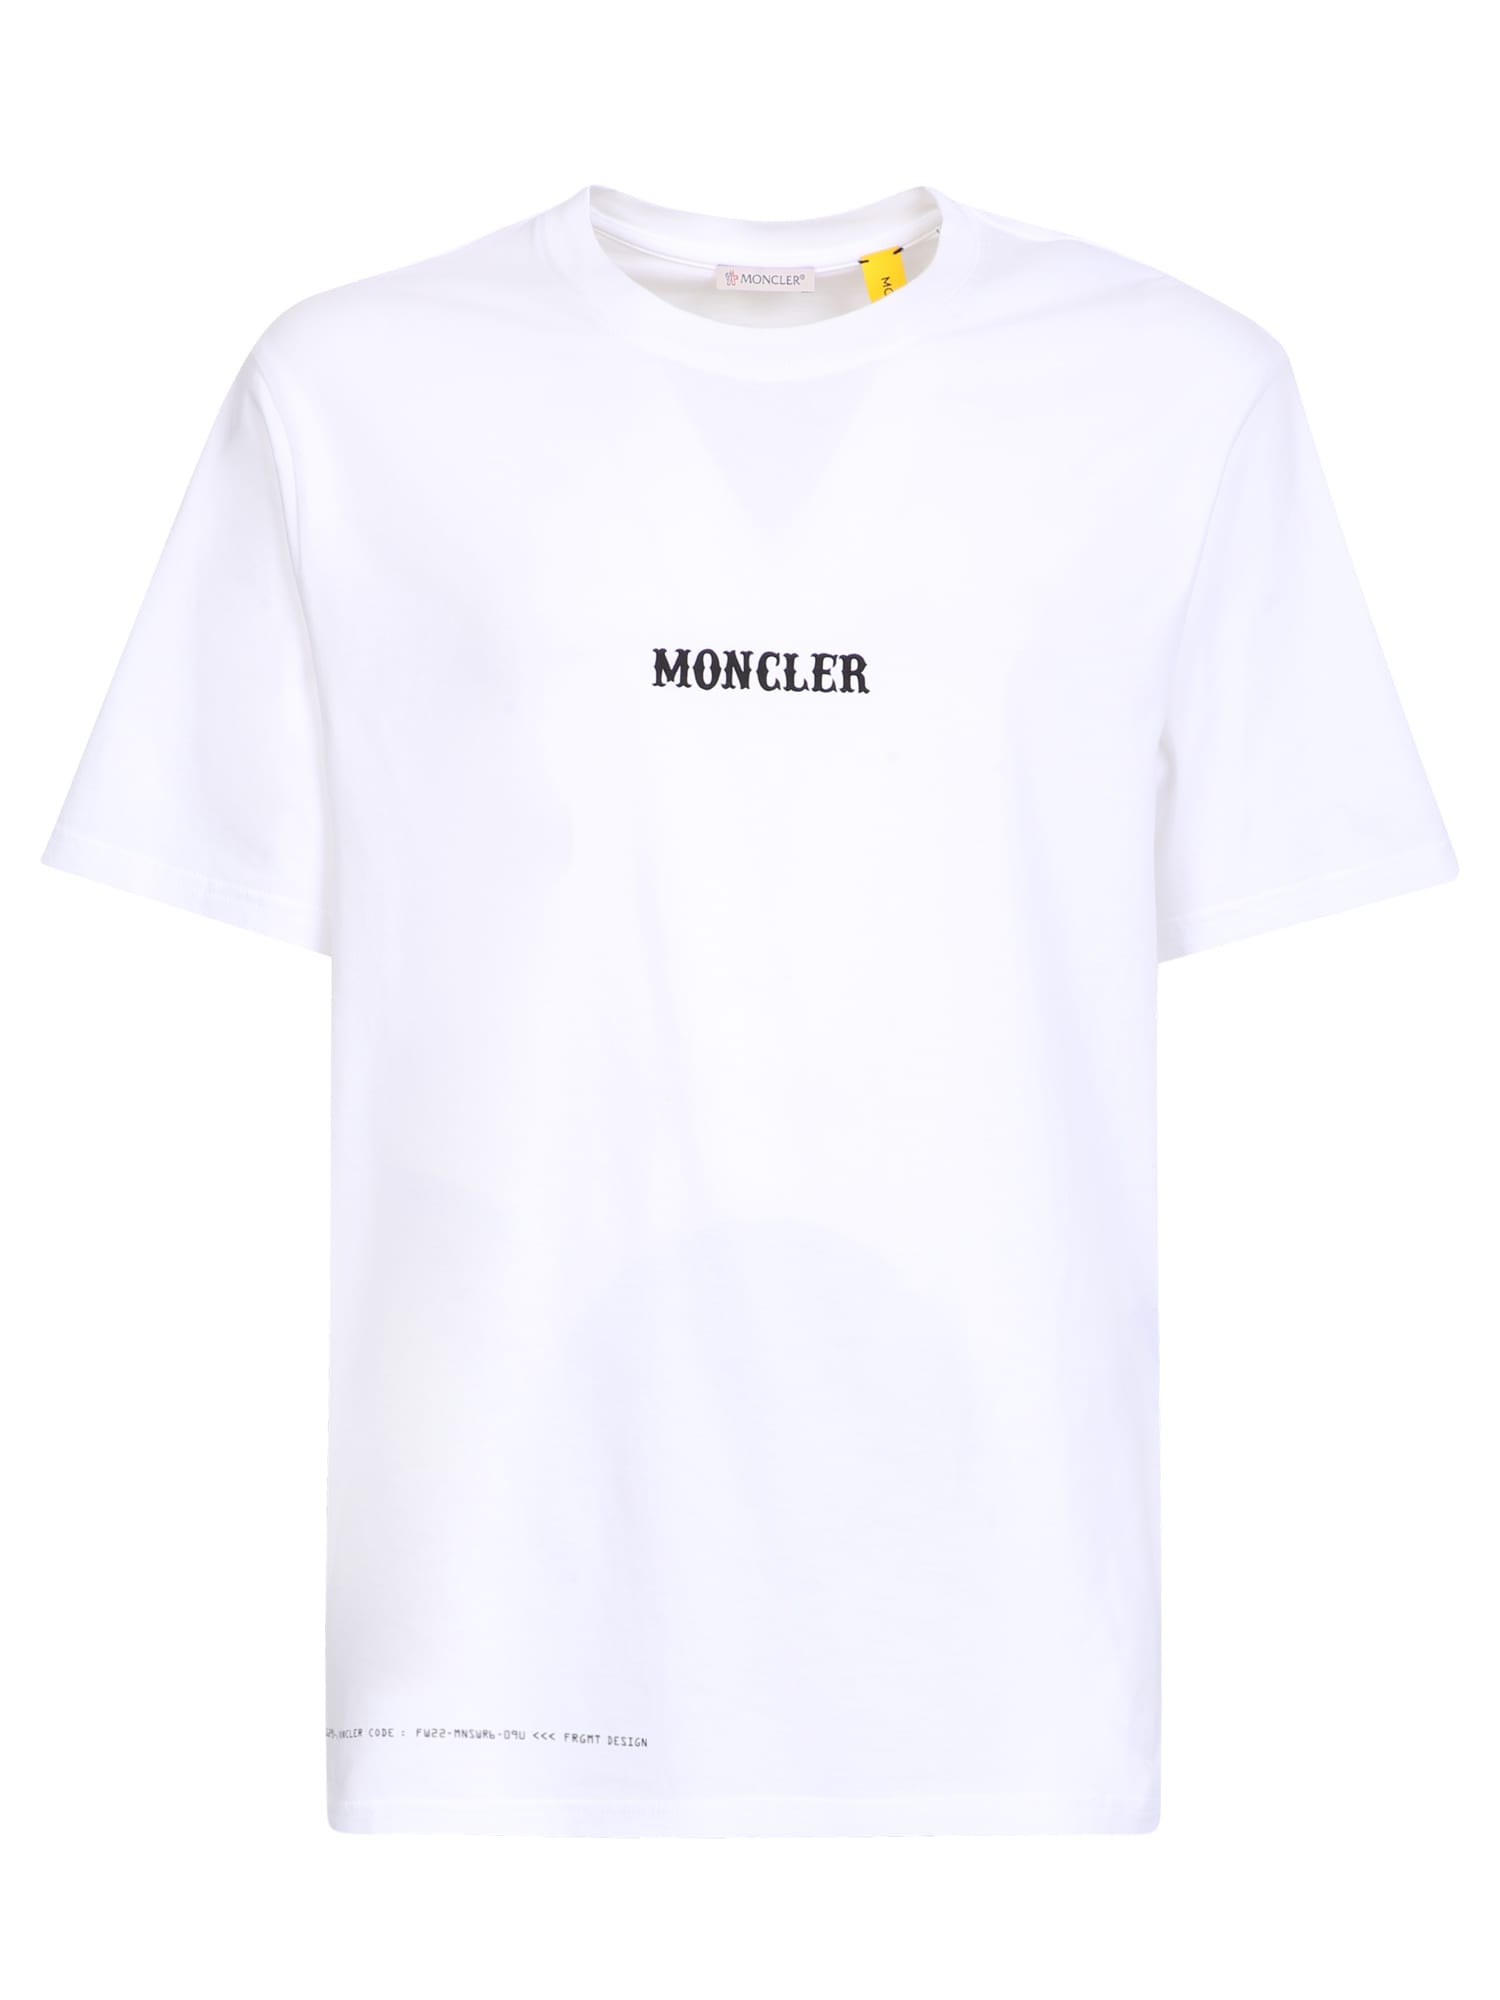 Moncler Genius White Printed T-shirt